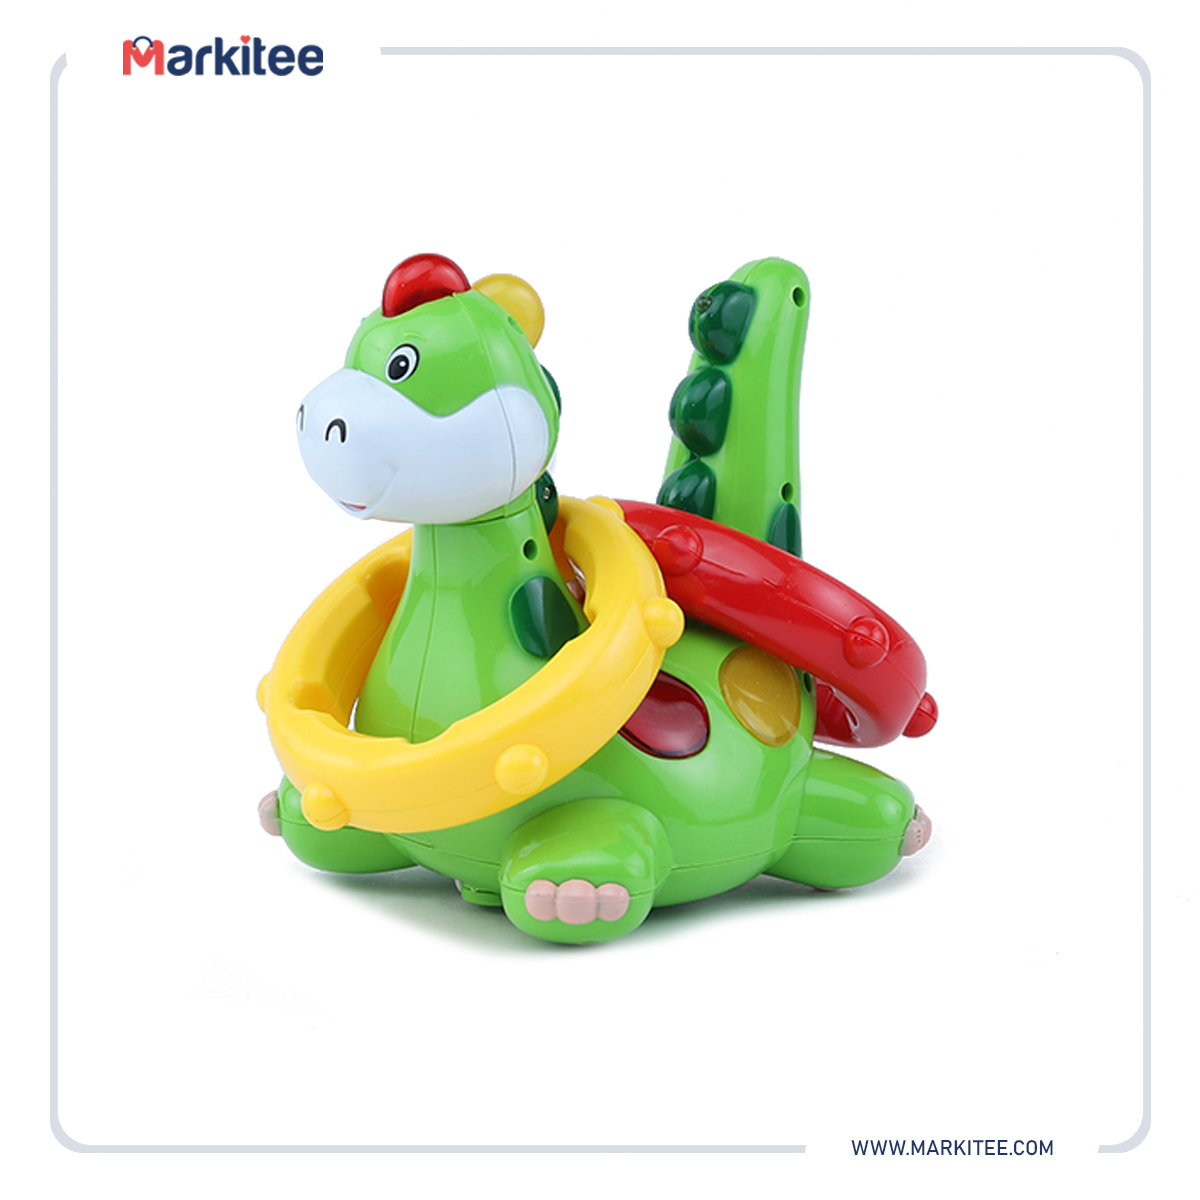 ماركيتي-markitee-20220531104724029_Markitee-Toys-Ty-370-1(3).jpg